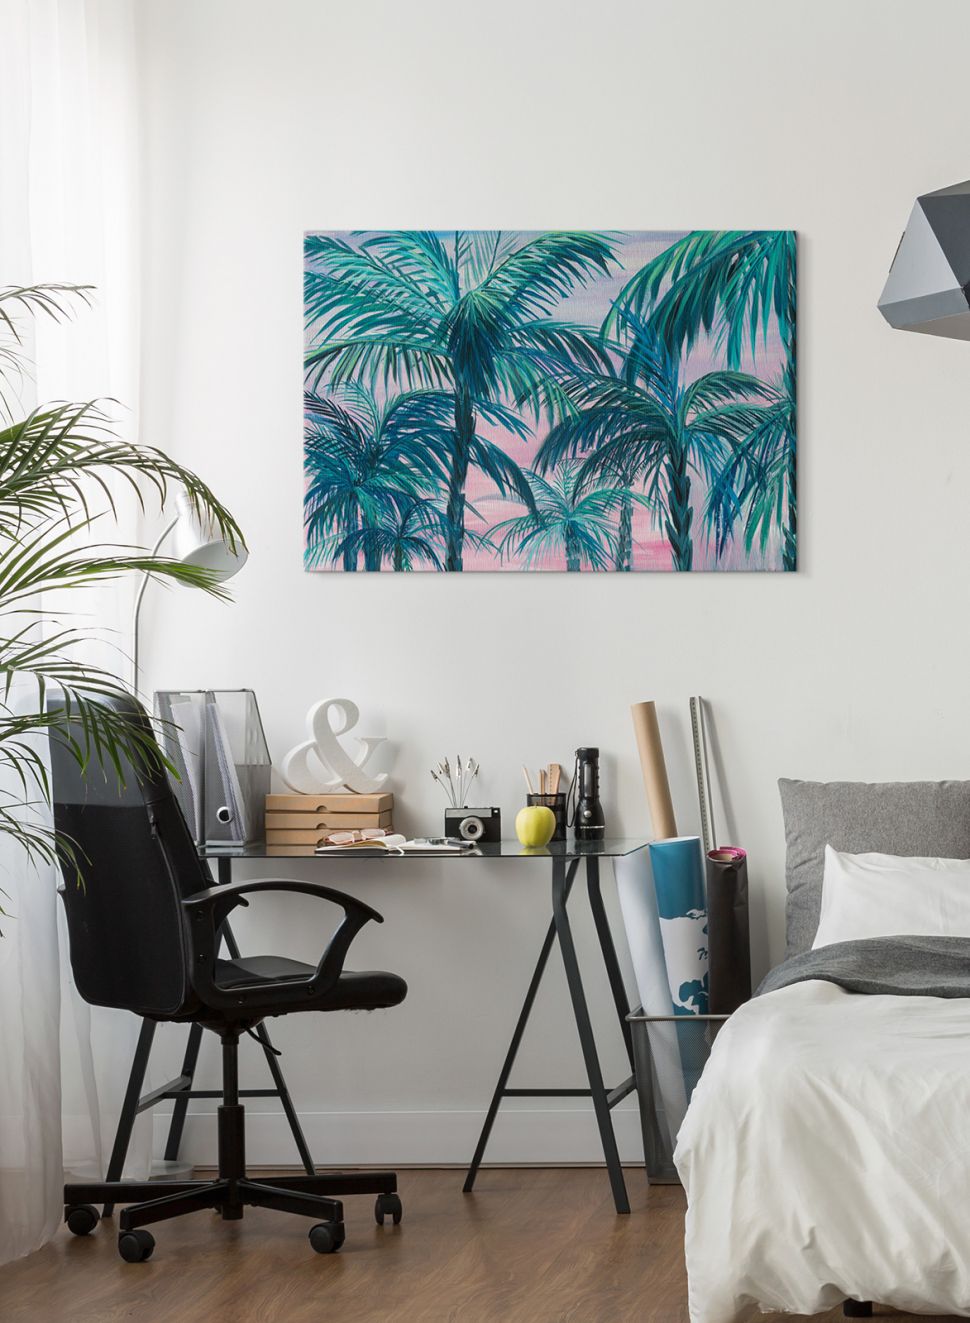 Canvas przedstawiający drzewa palmowe powieszony nad biurkiem w sypialni